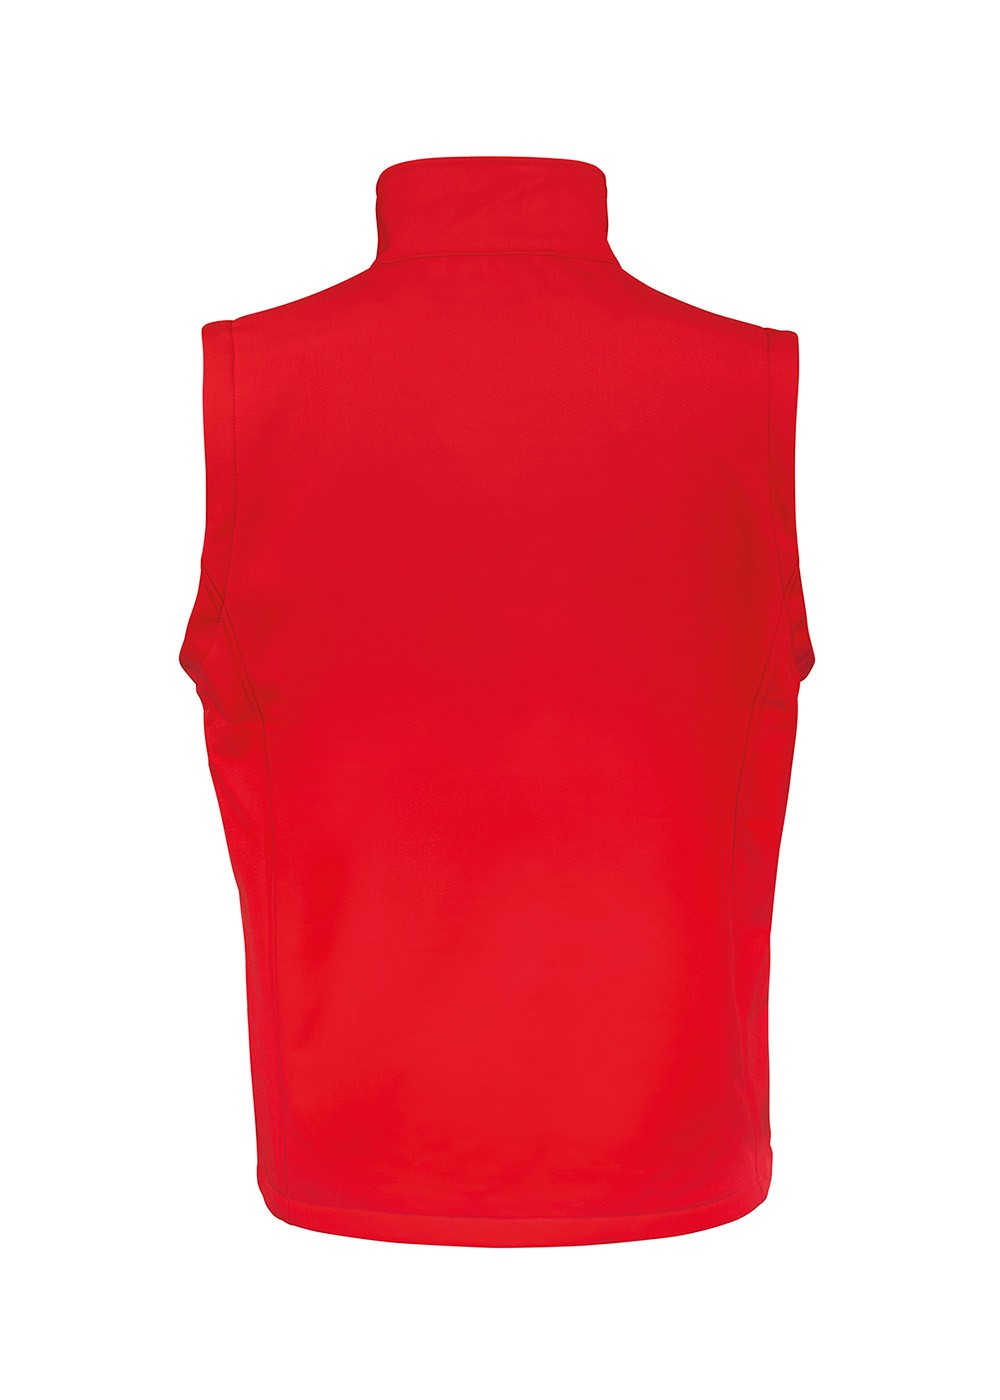 Softshell Unisex Vest Red/Black